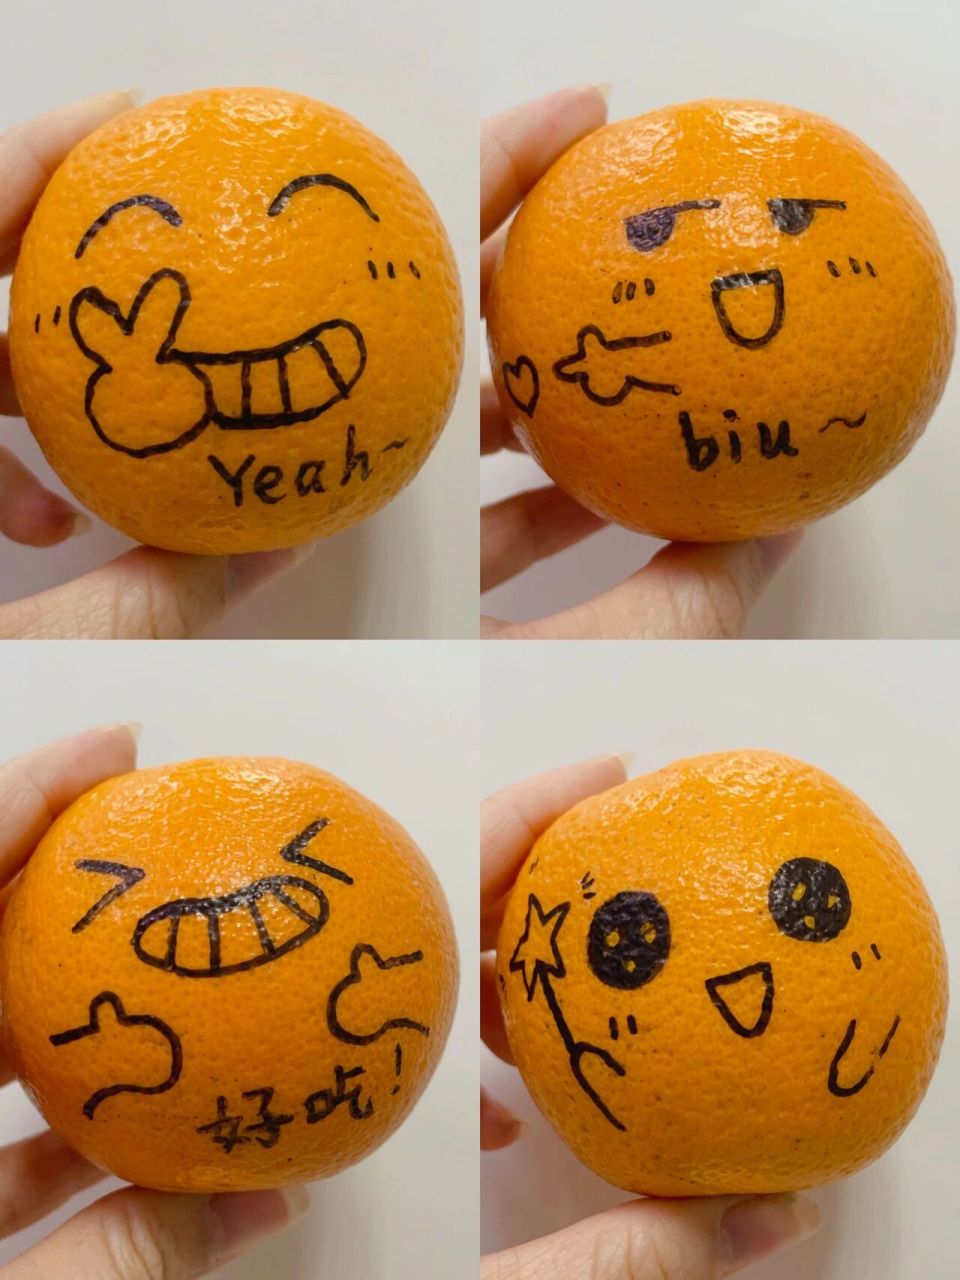 橙子惊讶表情包图片